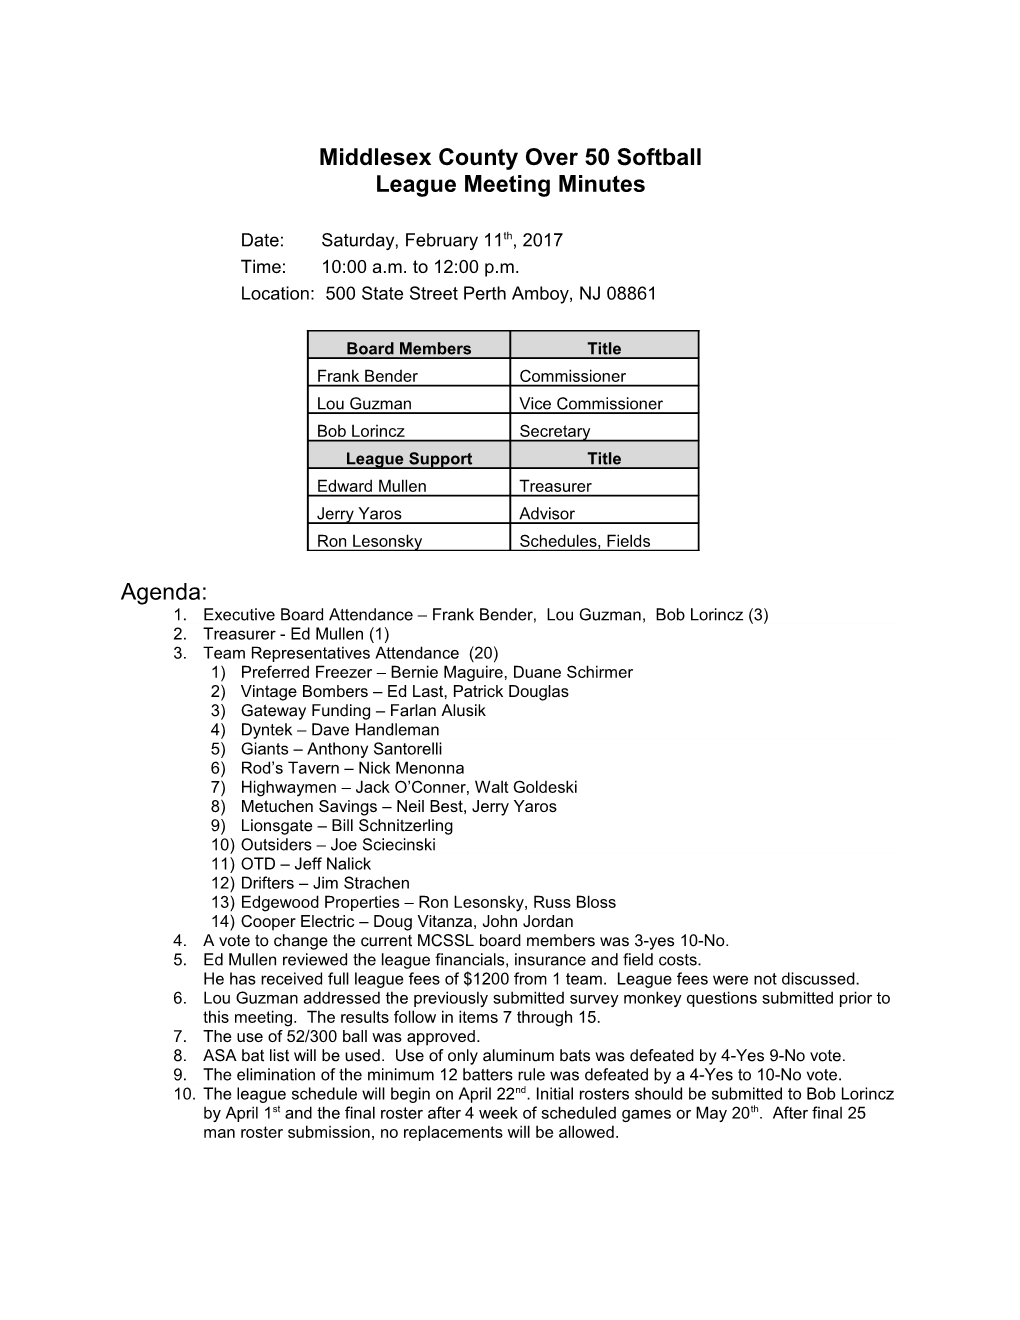 MCSSL 50'S Feb 11,2017 Meeting Minutes